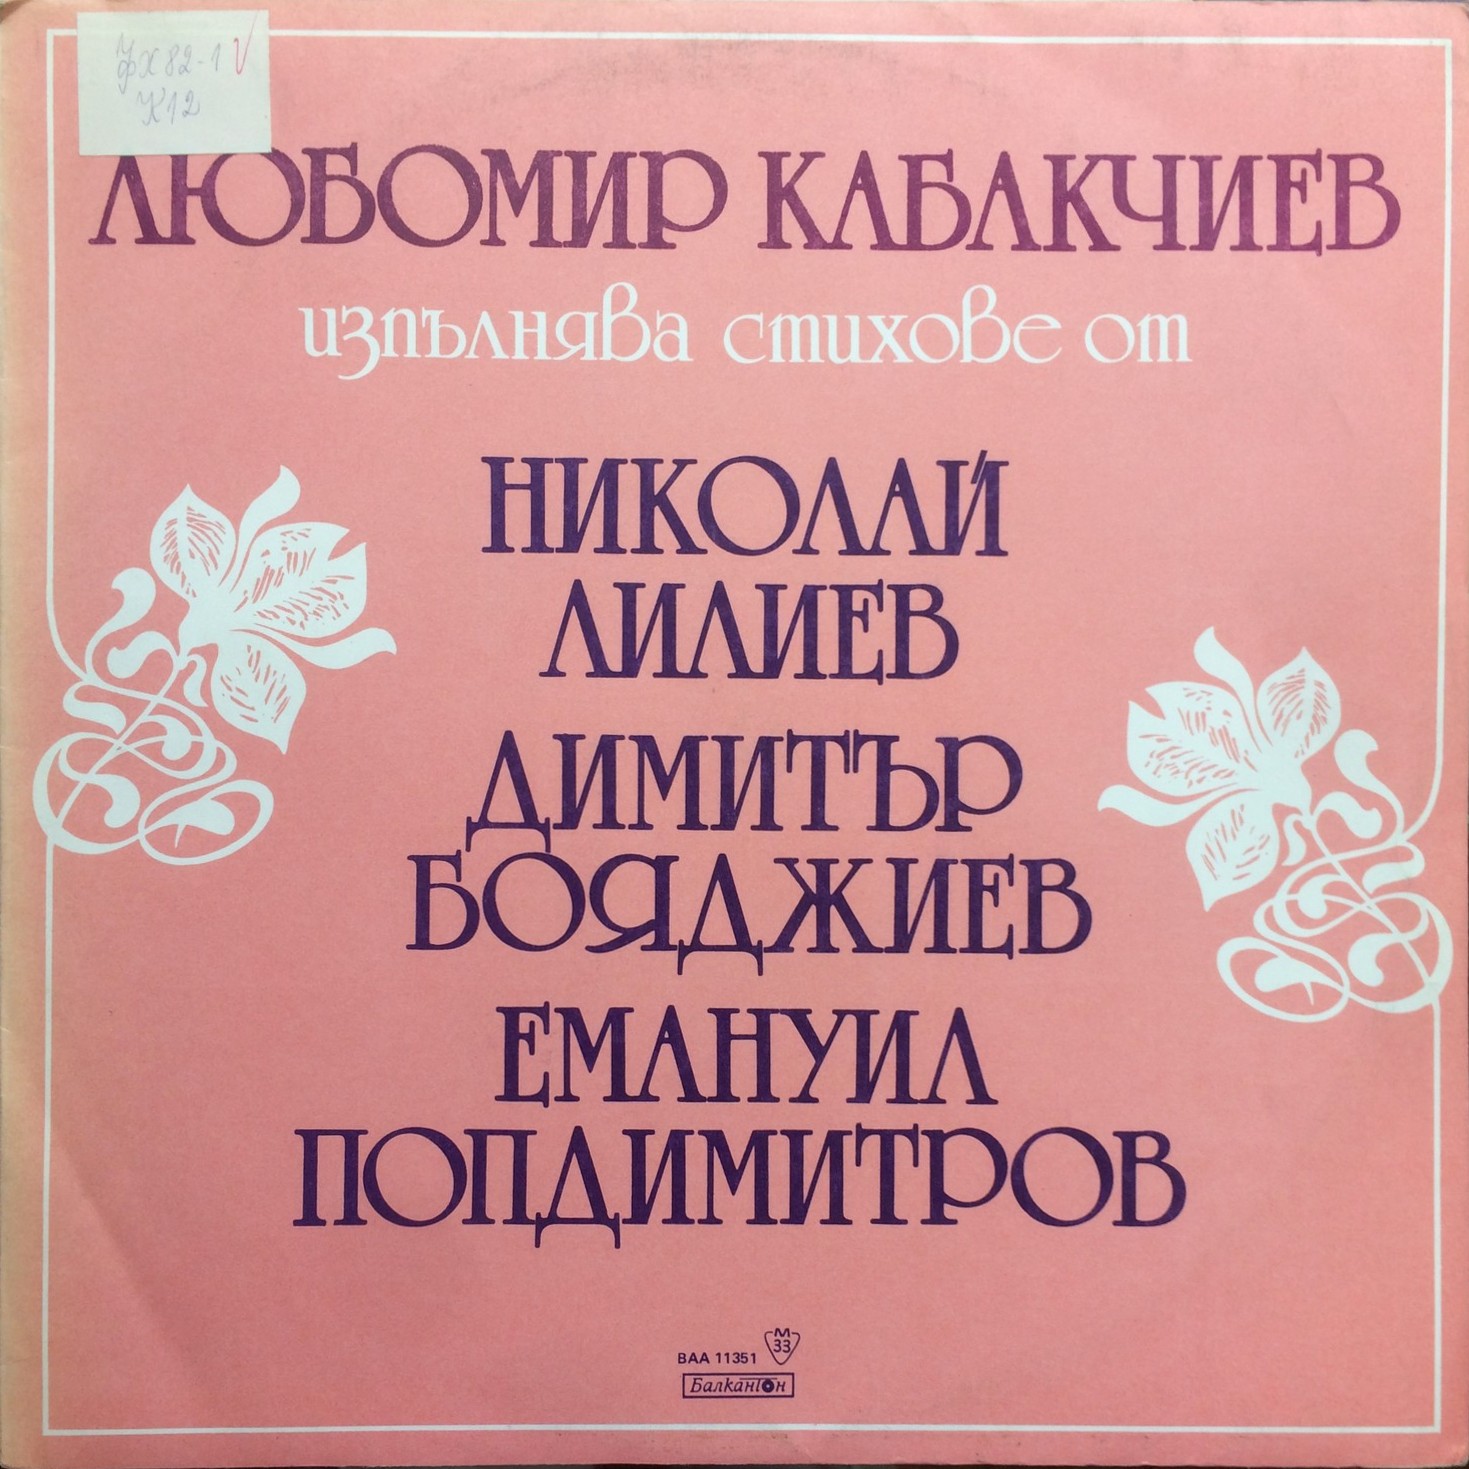 Стихове от Николай Лилиев, Димитър Бояджиев и Емануил Попдимитров изпълнява Любомир Кабакчиев